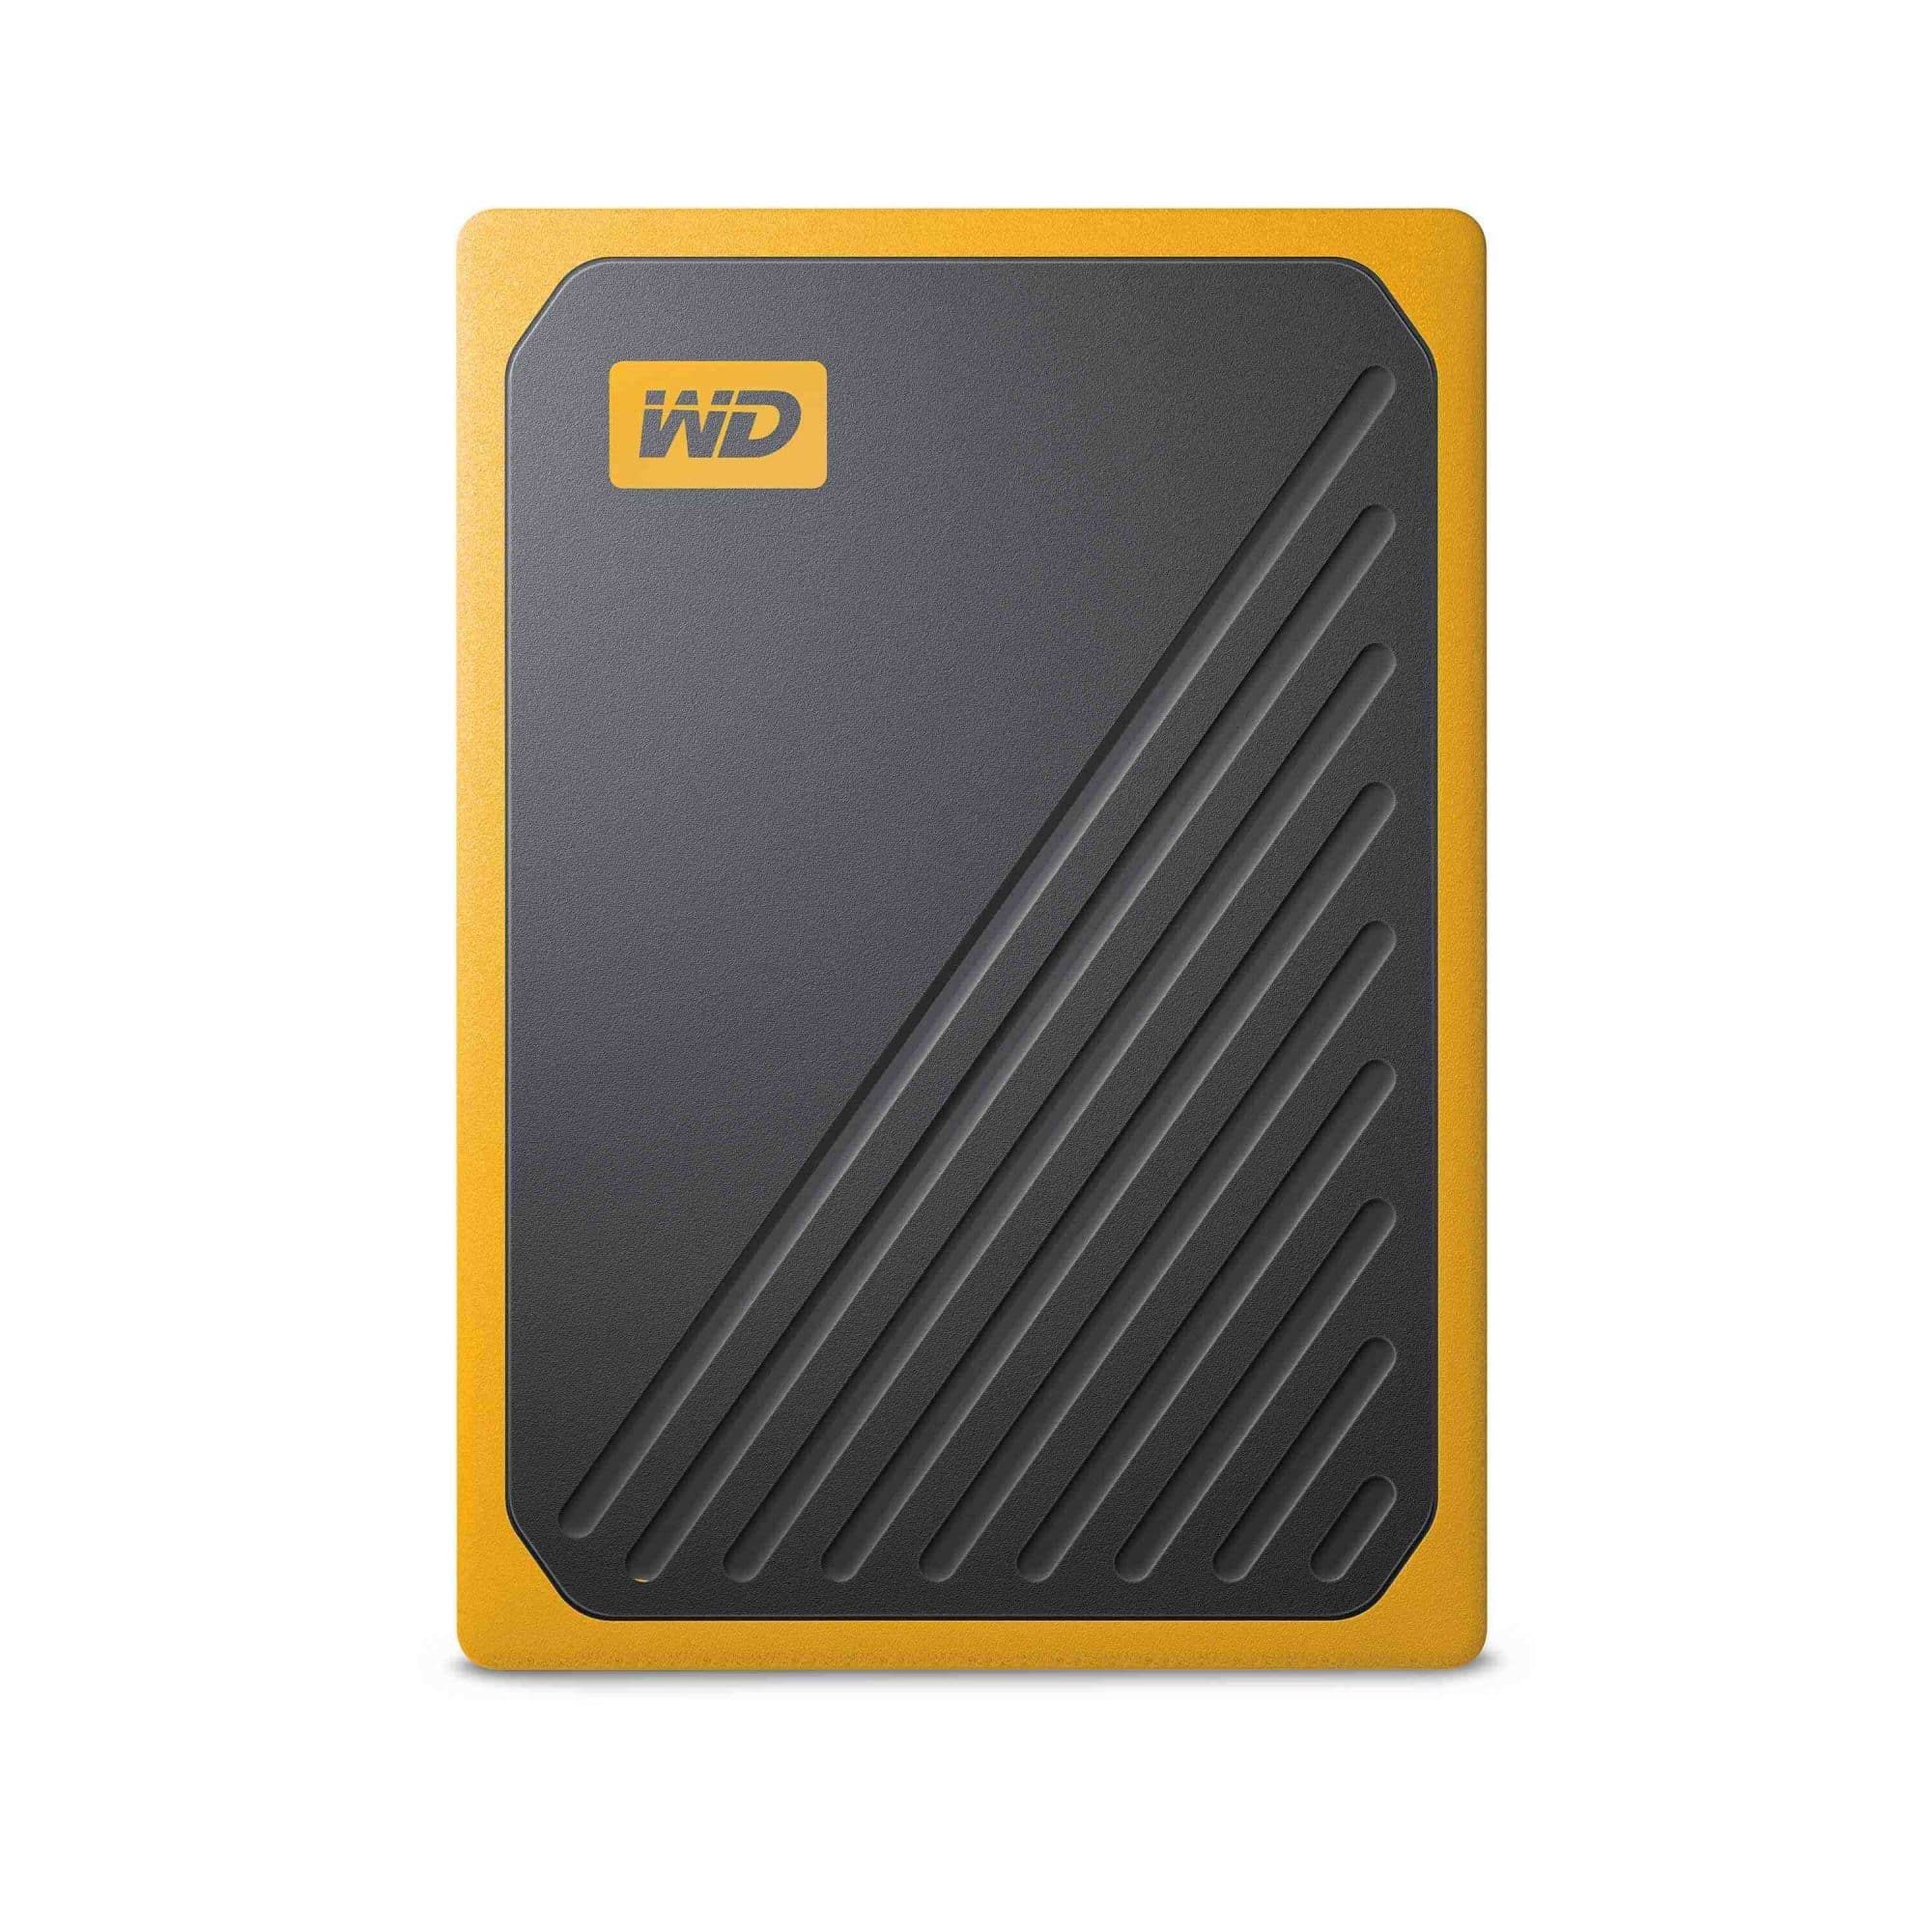 WD เปิดตัวไดรฟ์แบบพกพา My Passport Go SSD และ My Passport Ultra HDD โฉมใหม่ที่งานคอมมาร์ท 2019 5